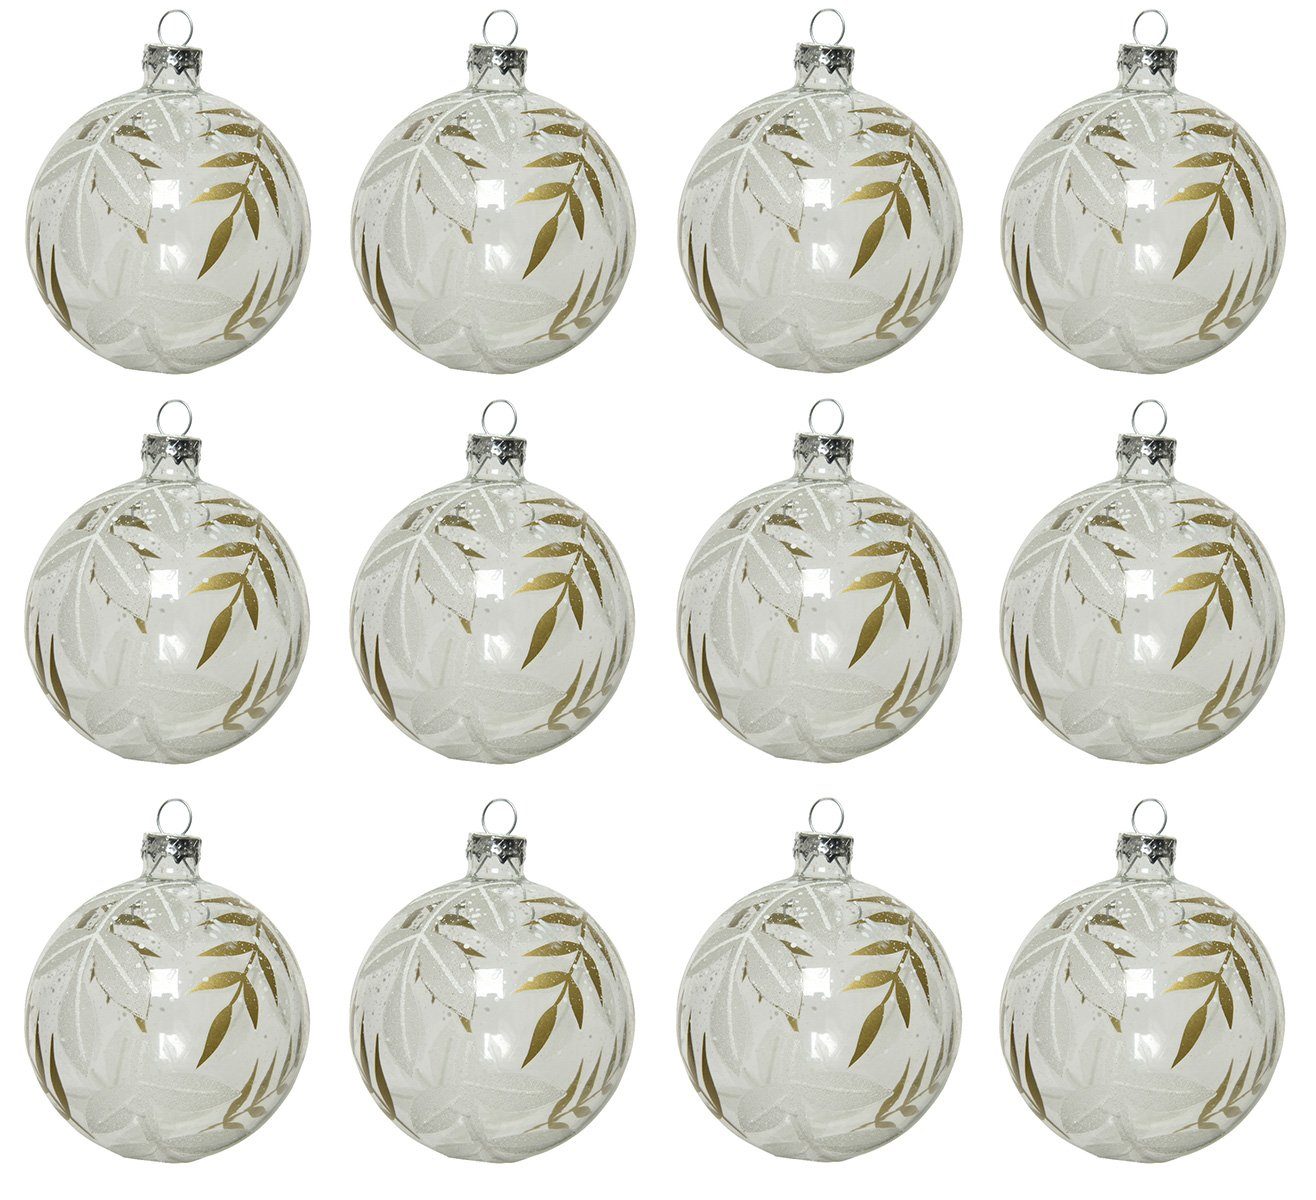 Decoris season decorations Weihnachtsbaumkugel, Weihnachtskugeln Glas 8cm mit Blätter Muster 12er Set Klar transparent | Weihnachtskugeln